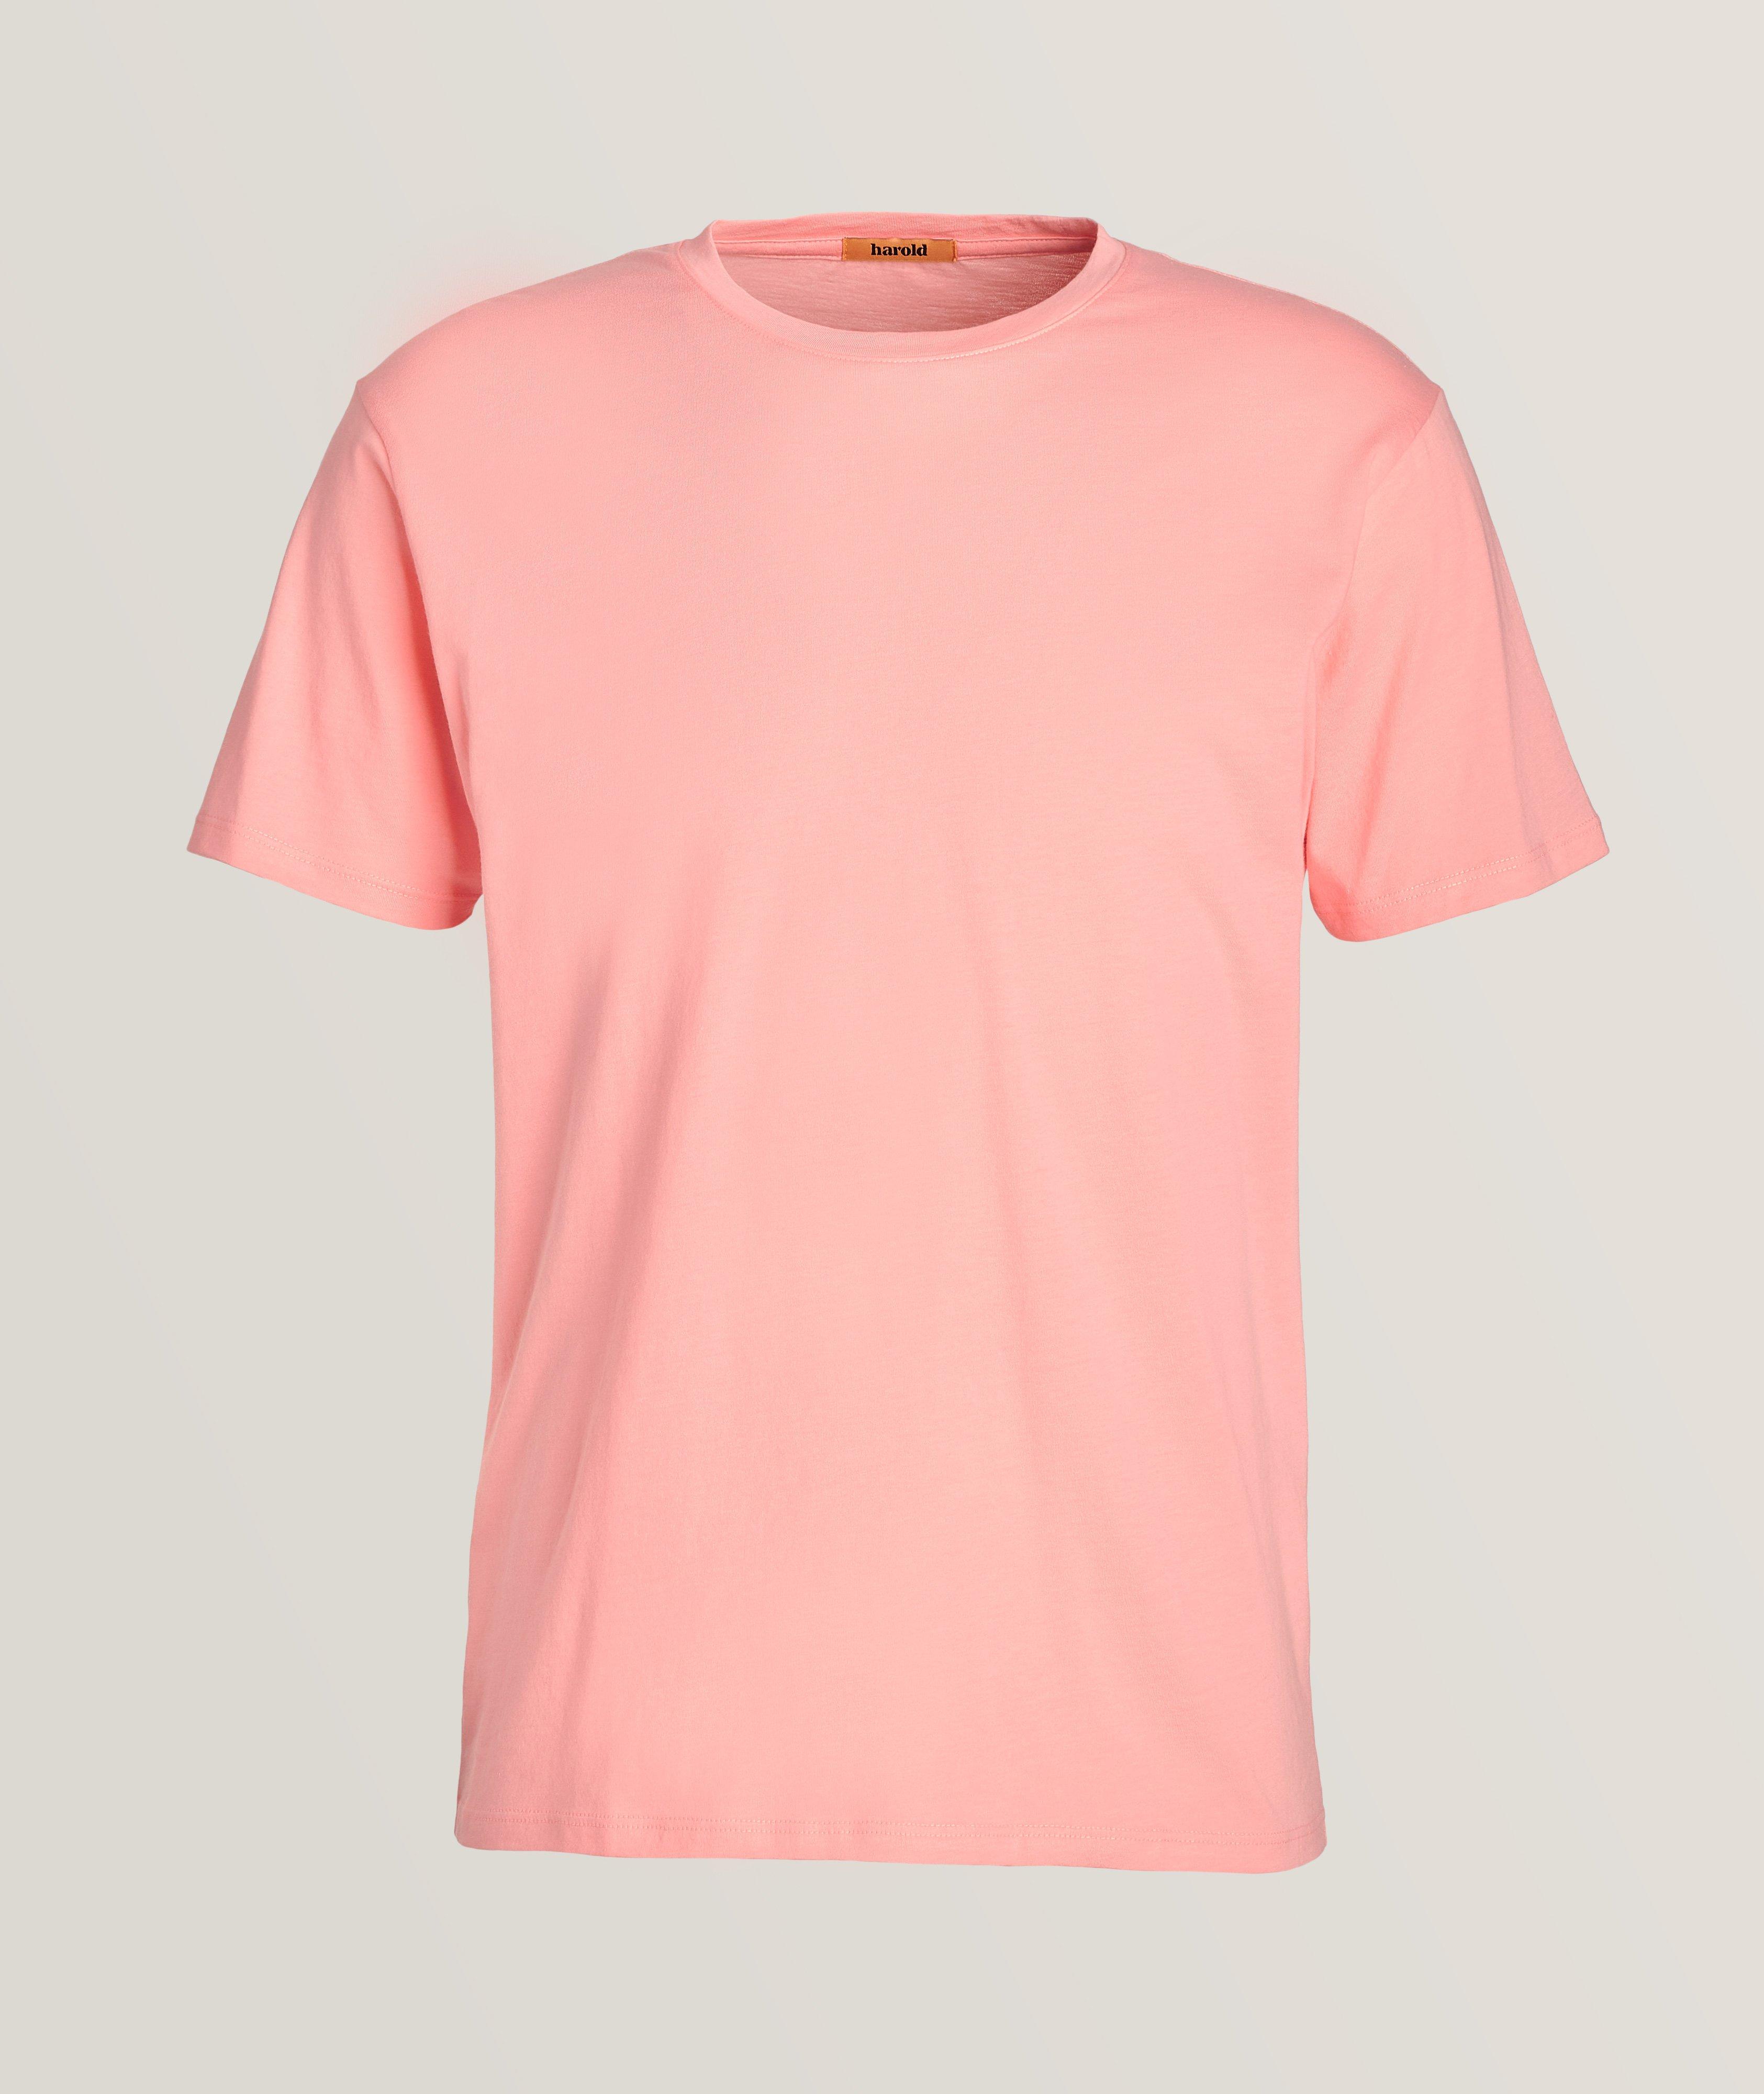 T-shirt en coton pima teint en pièce à encolure ronde image 0